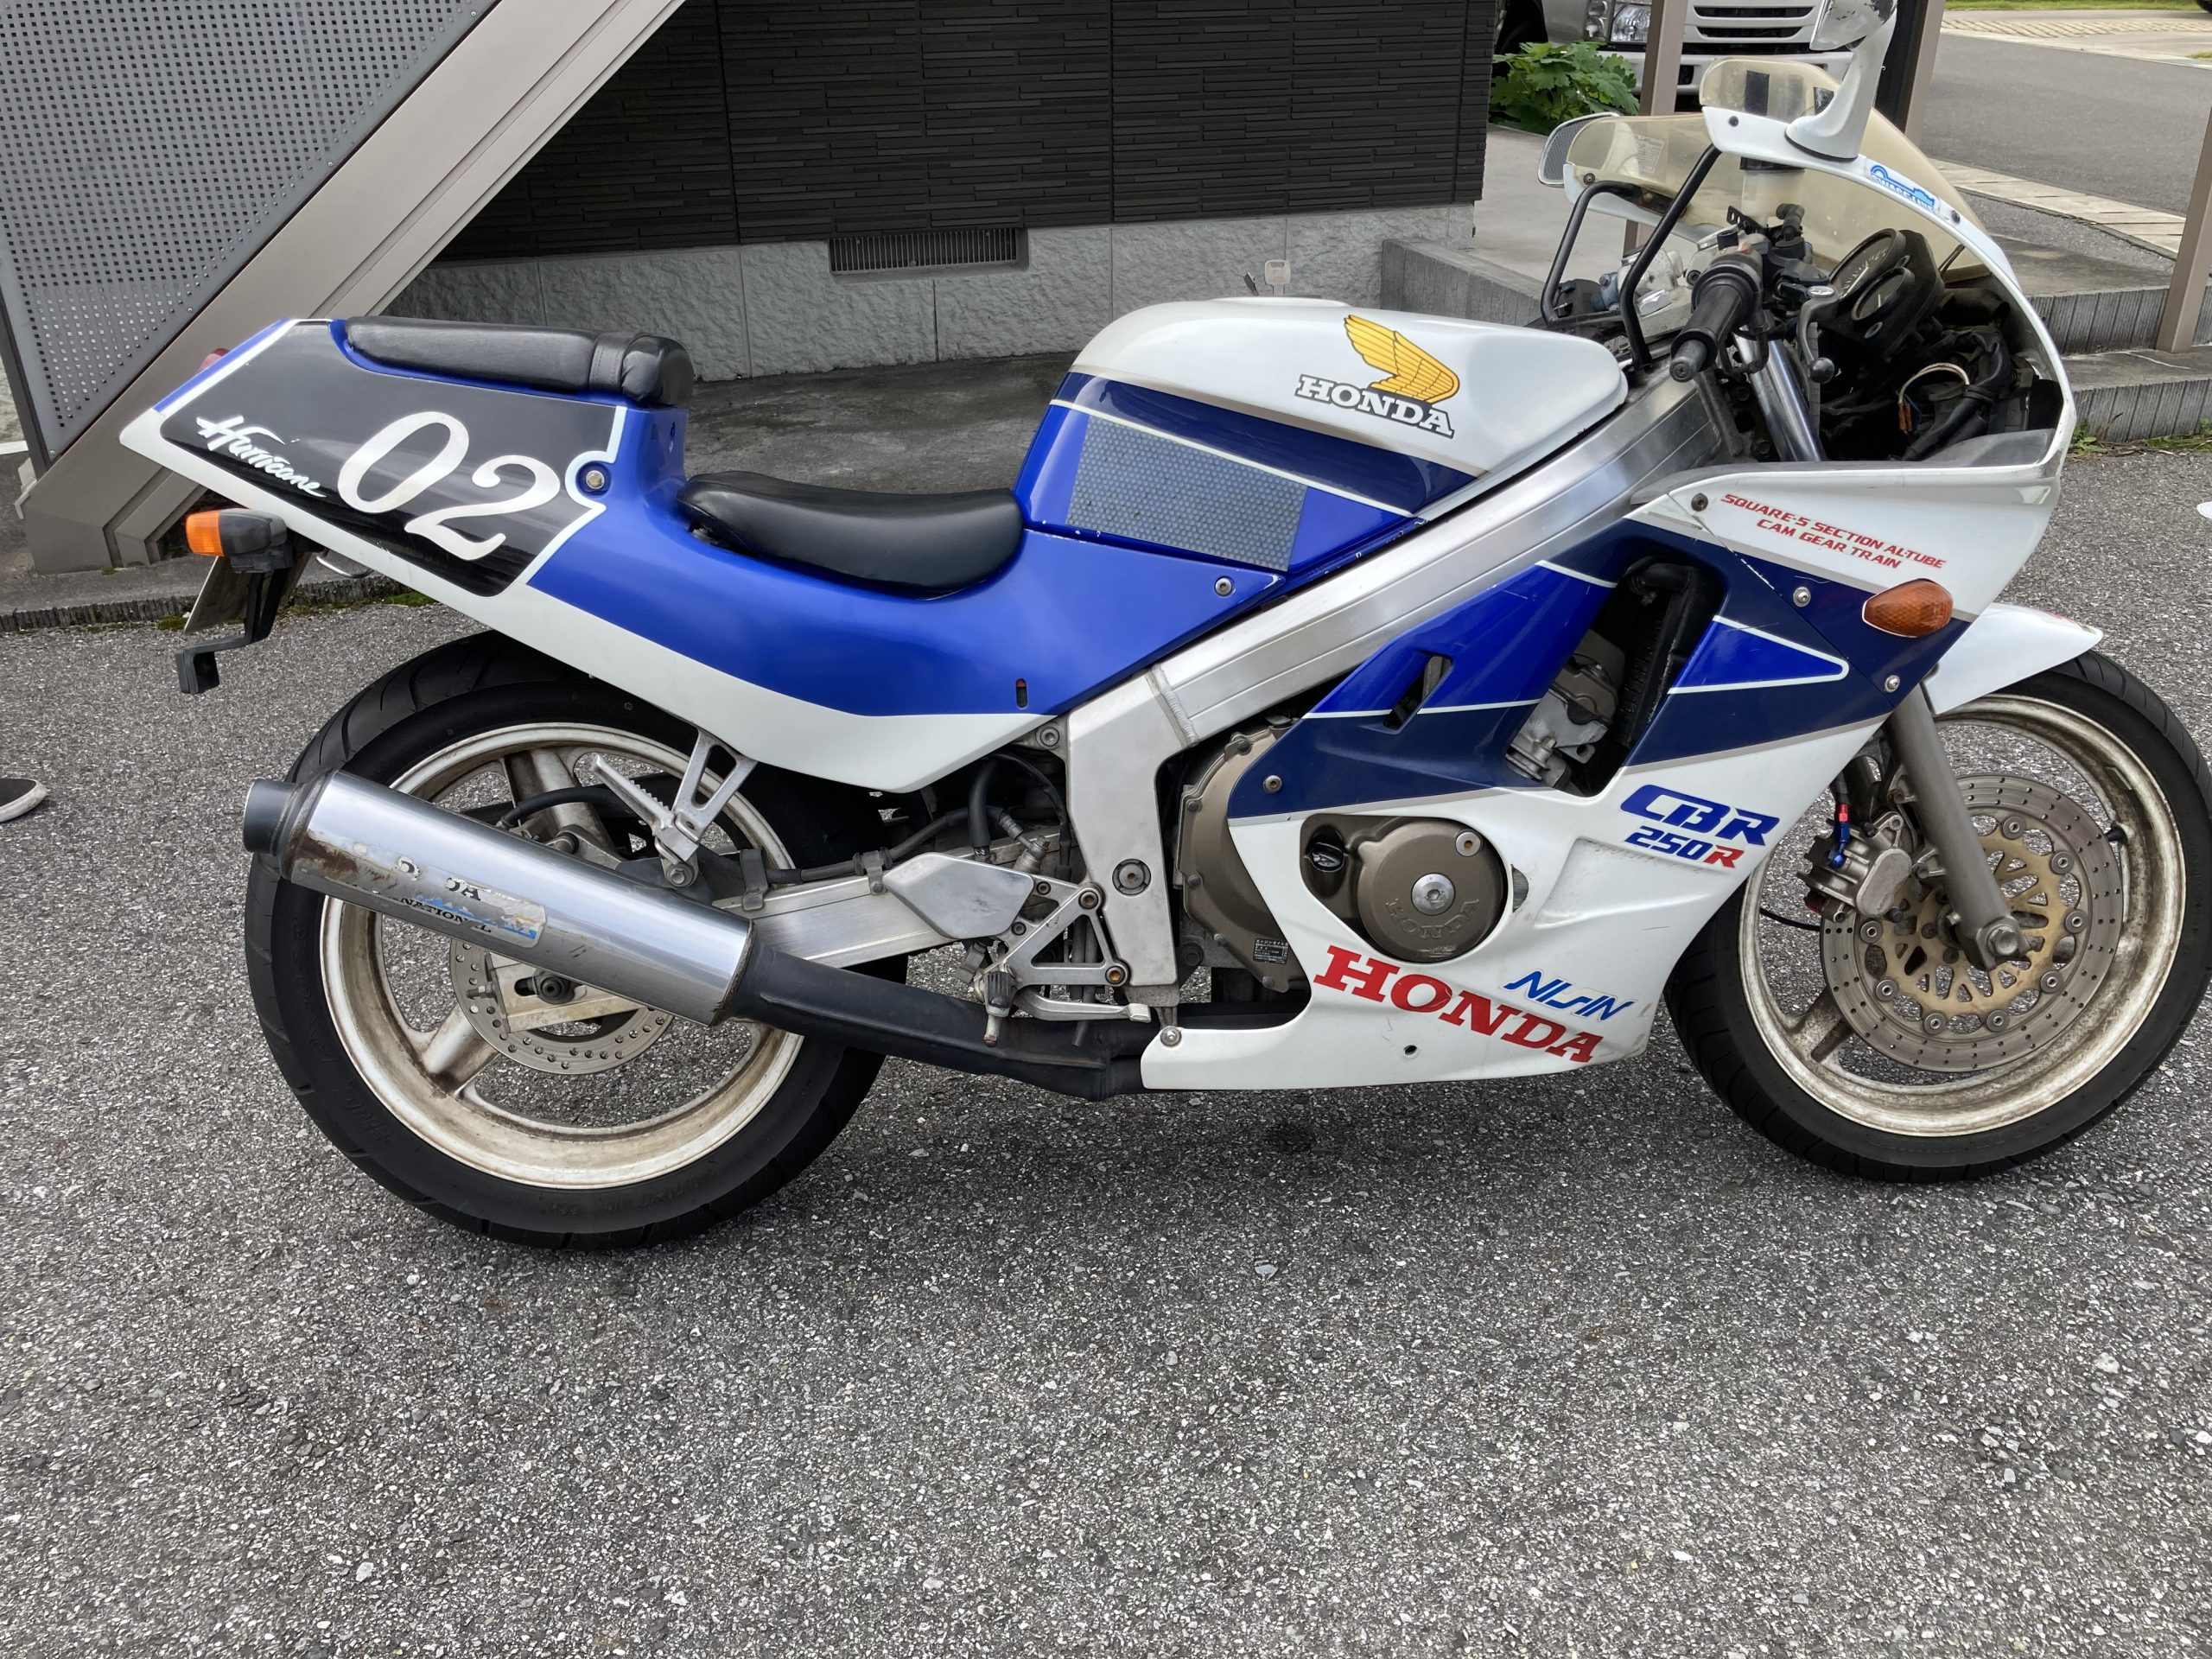 ホンダ CBR250R - バイク買取ならバイク買取ならバイク査定ドットコム